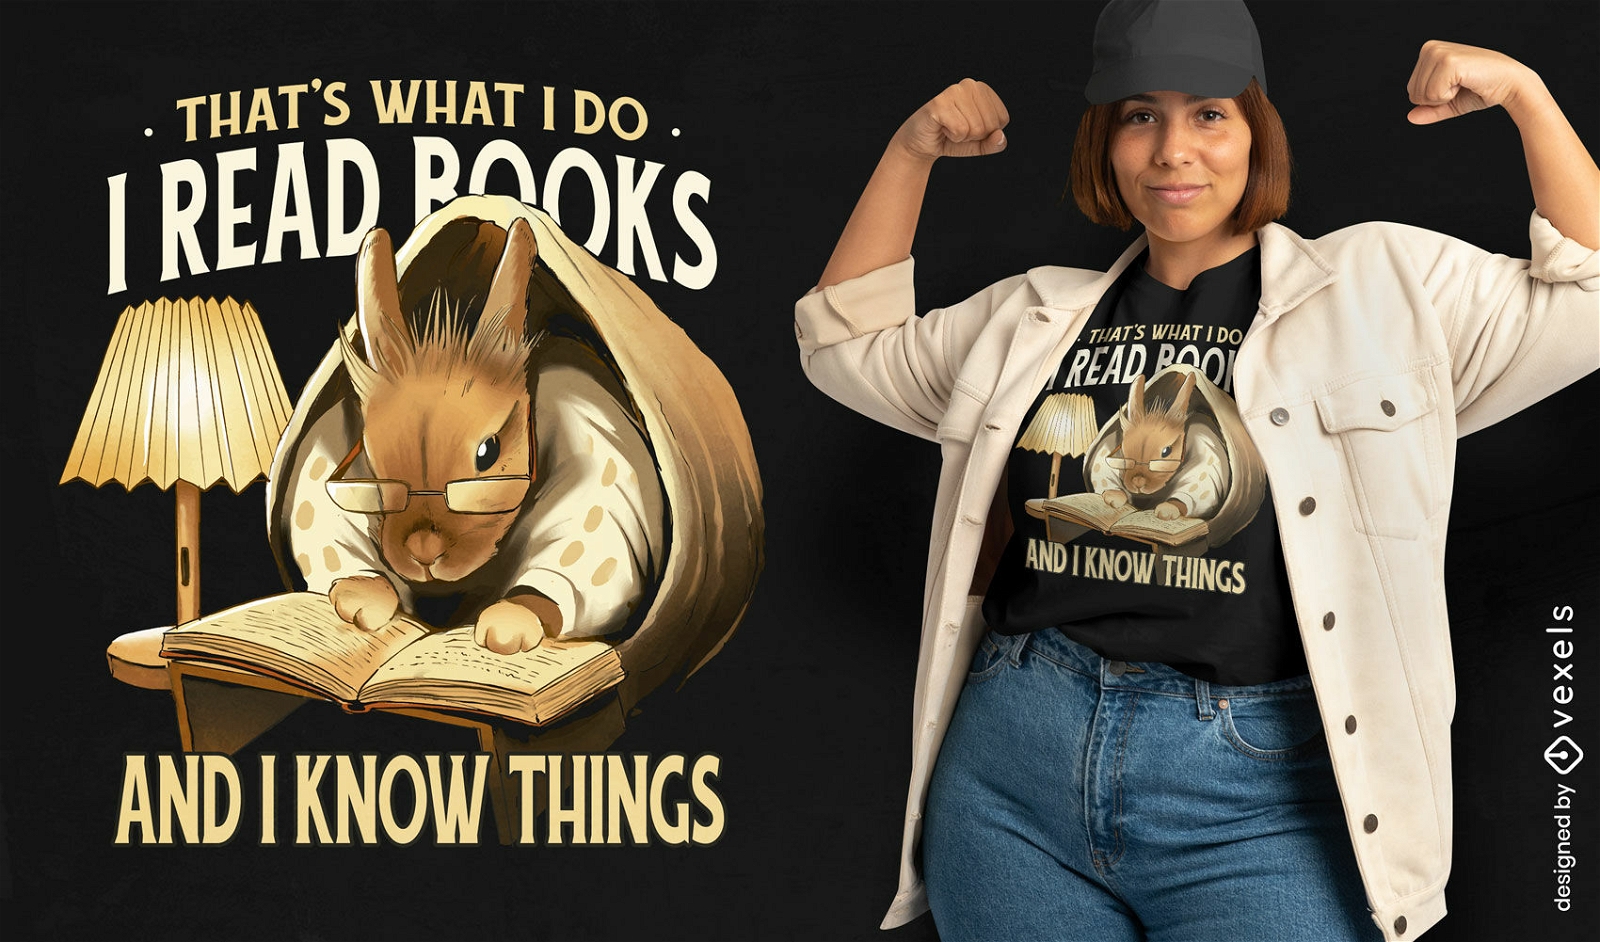 Dise?o de camiseta de libro de lectura de conejo.